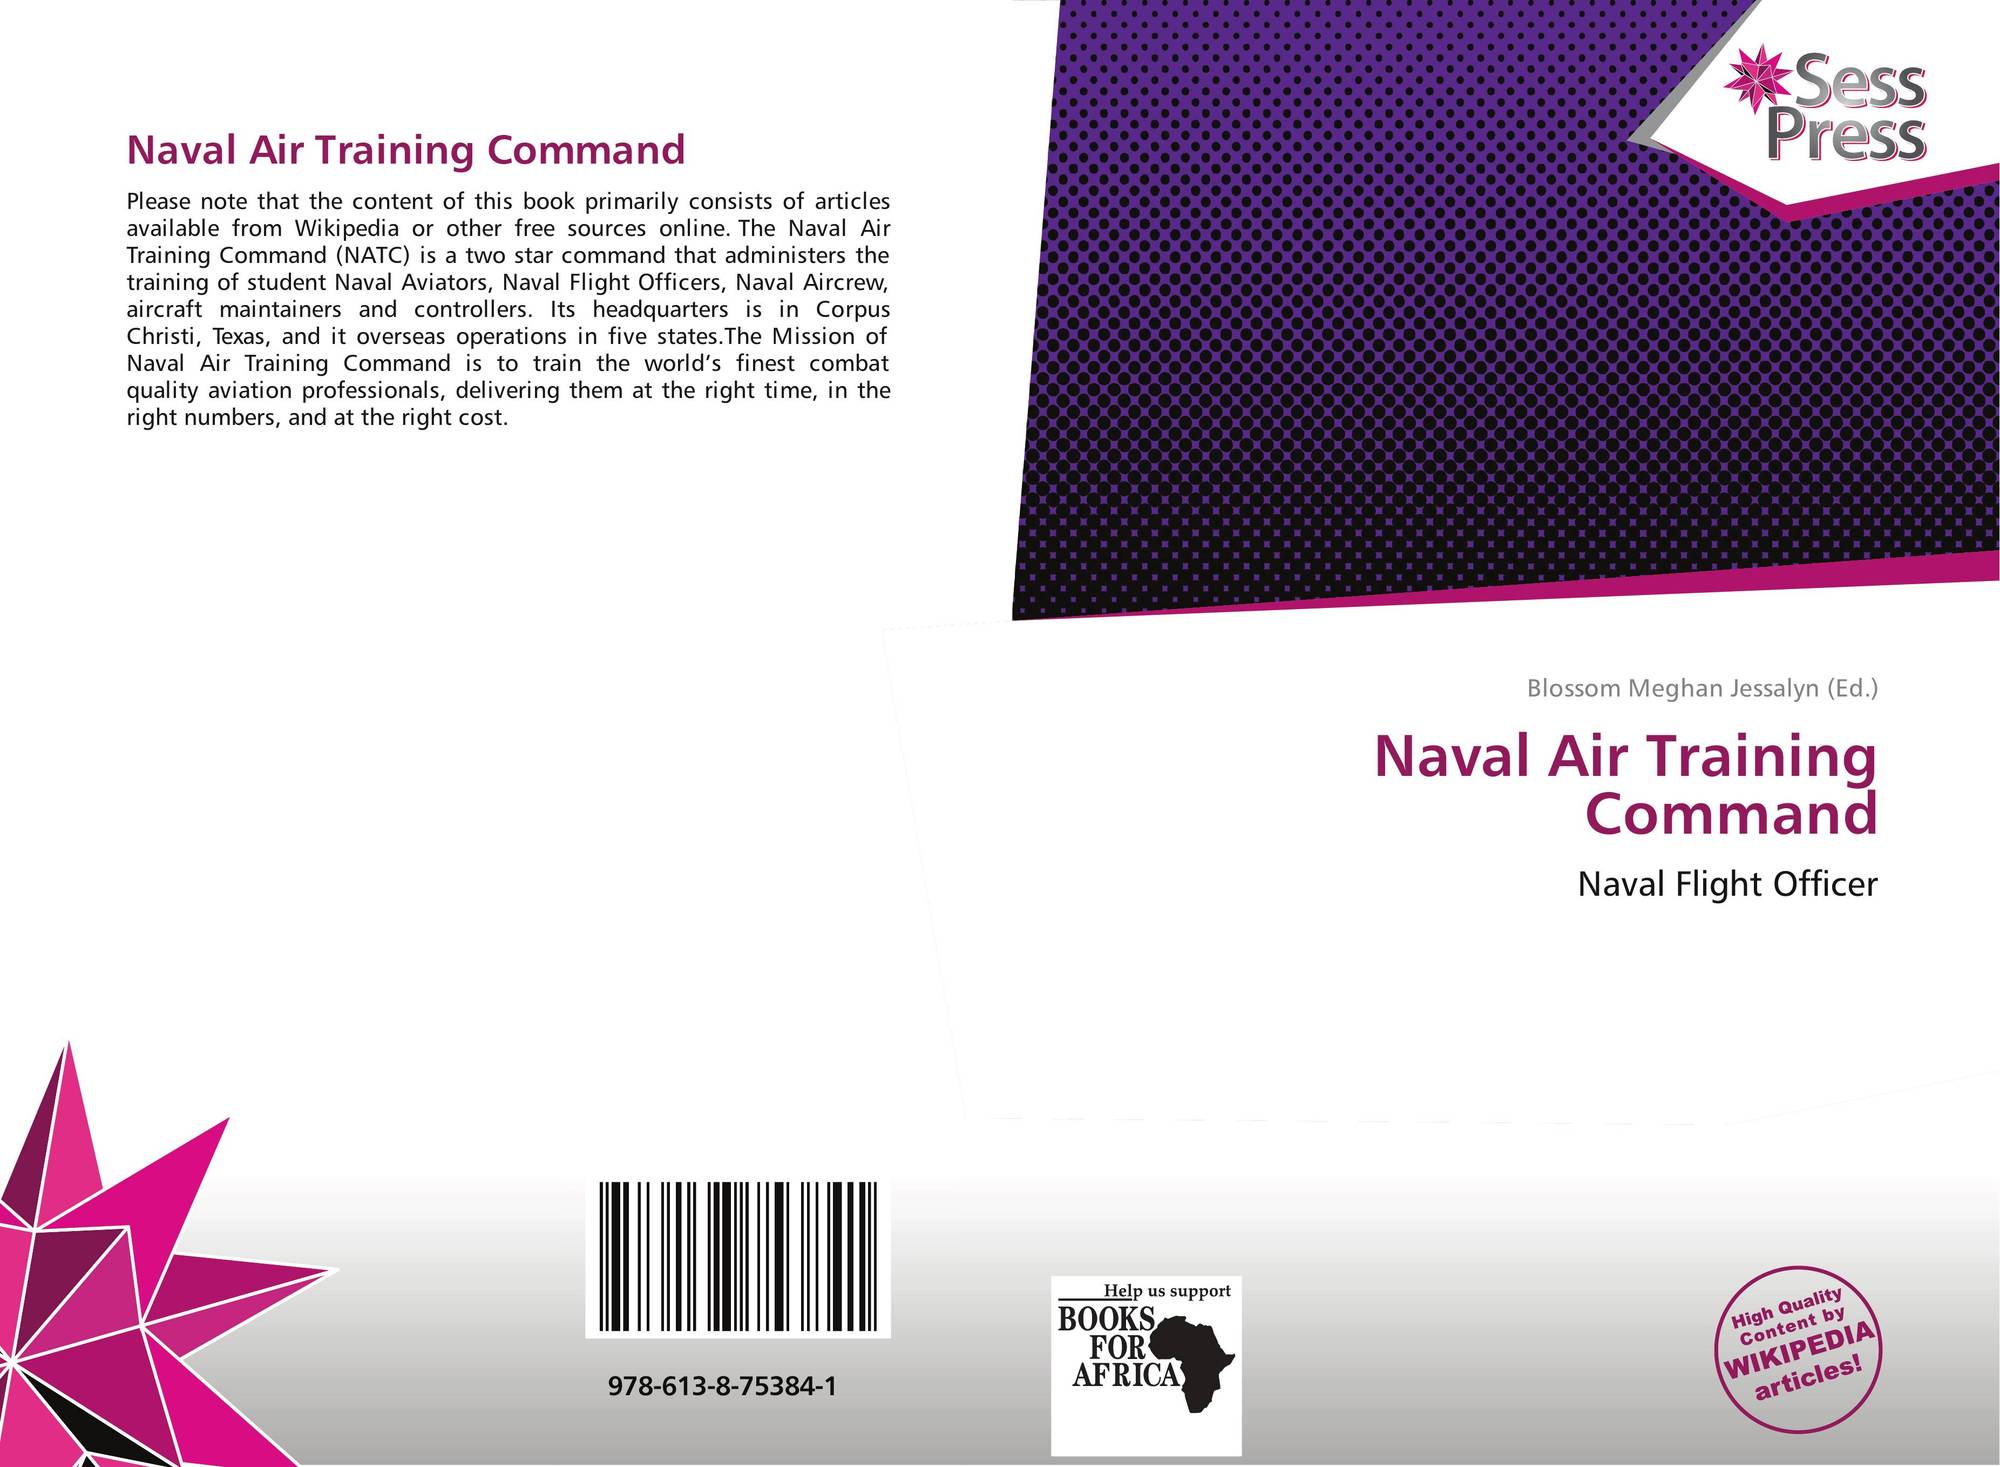 Naval Air Training Command Logo - Naval Air Training Command, 978-613-8-75384-1, 6138753844 ,9786138753841